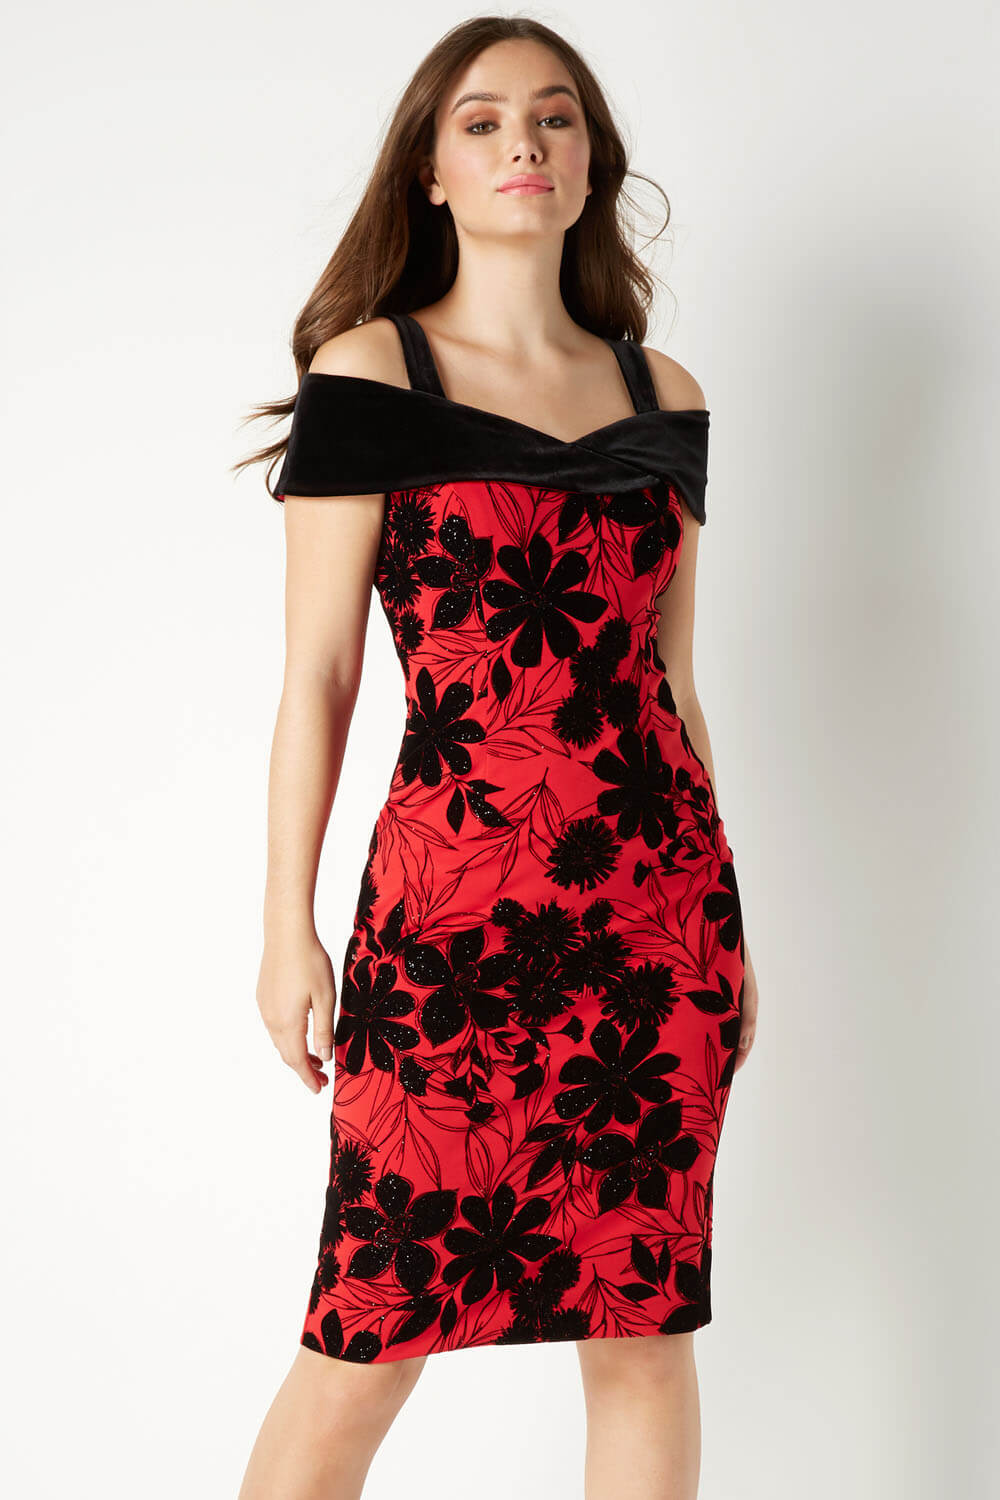 Red Floral Flock Cold Shoulder Dress, Image 2 of 5